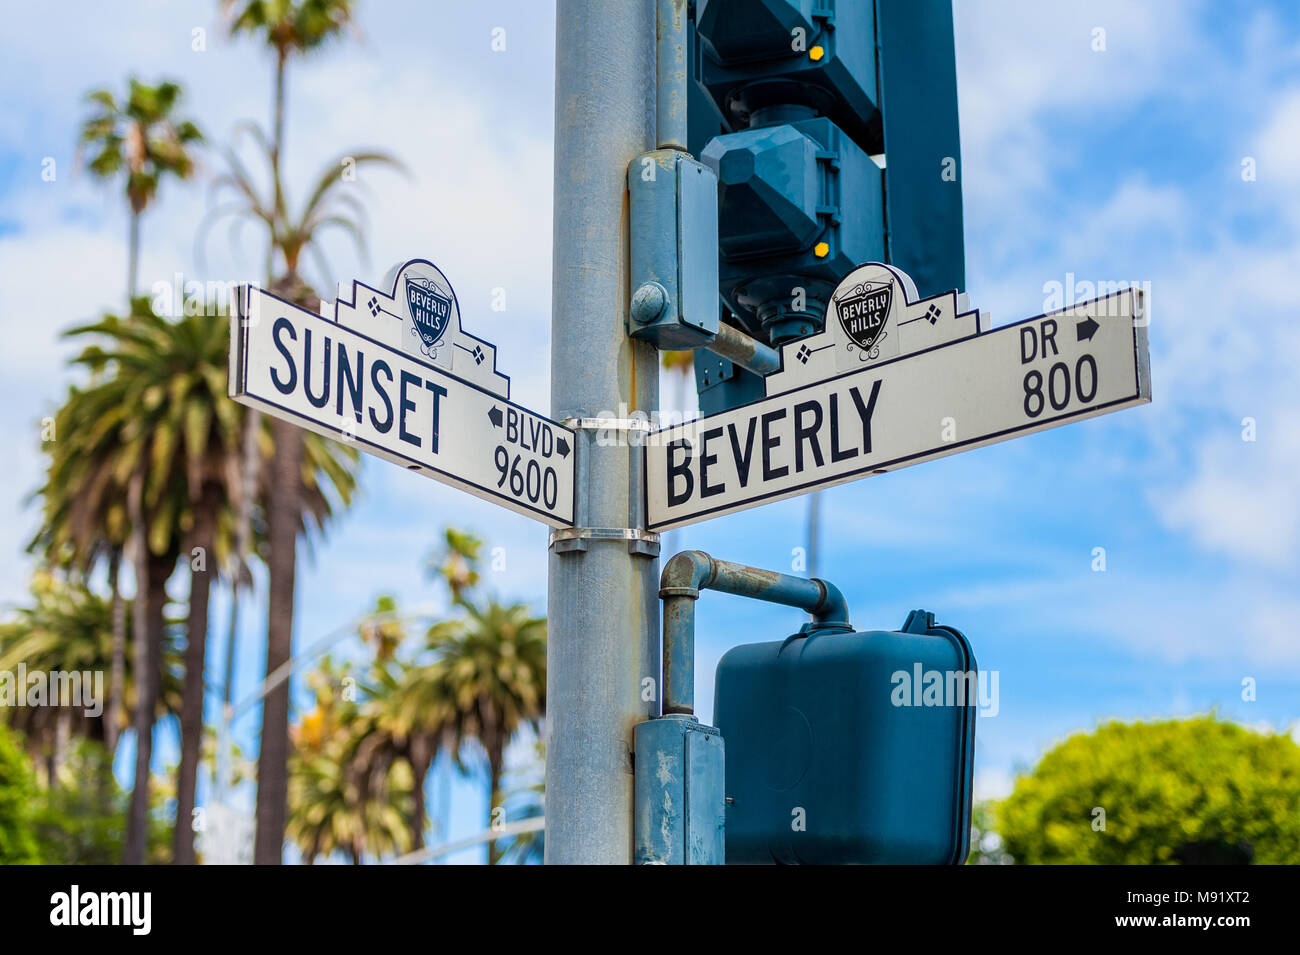 Sunset Boulevard und Beverly Drive Straßenschilder in Beverly Hills Kalifornien Stockfoto